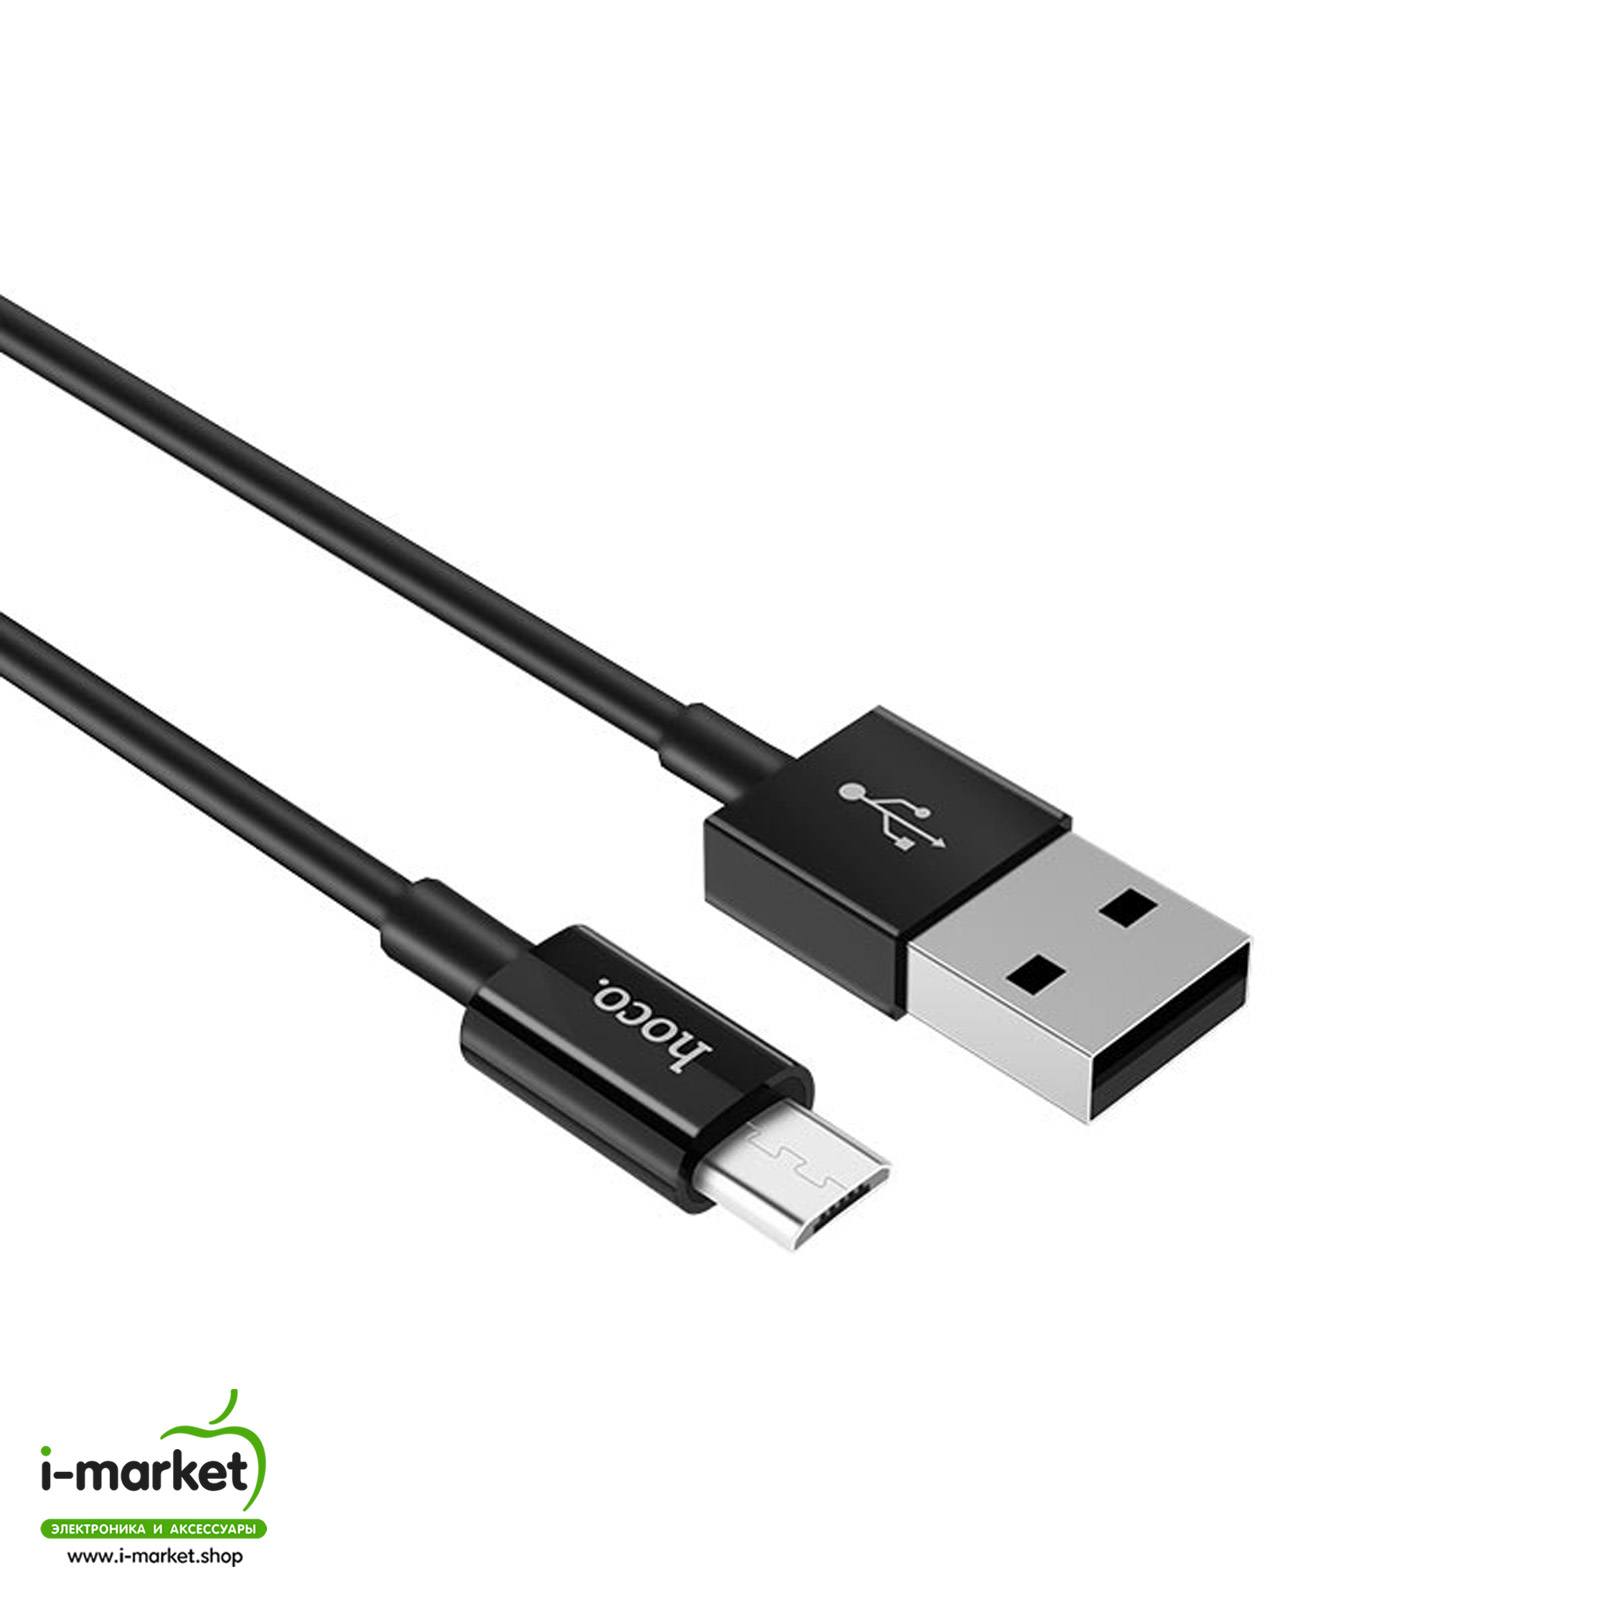 Кабель Micro USB HOCO X23 Skilled, длина 1 метр, цвет черный